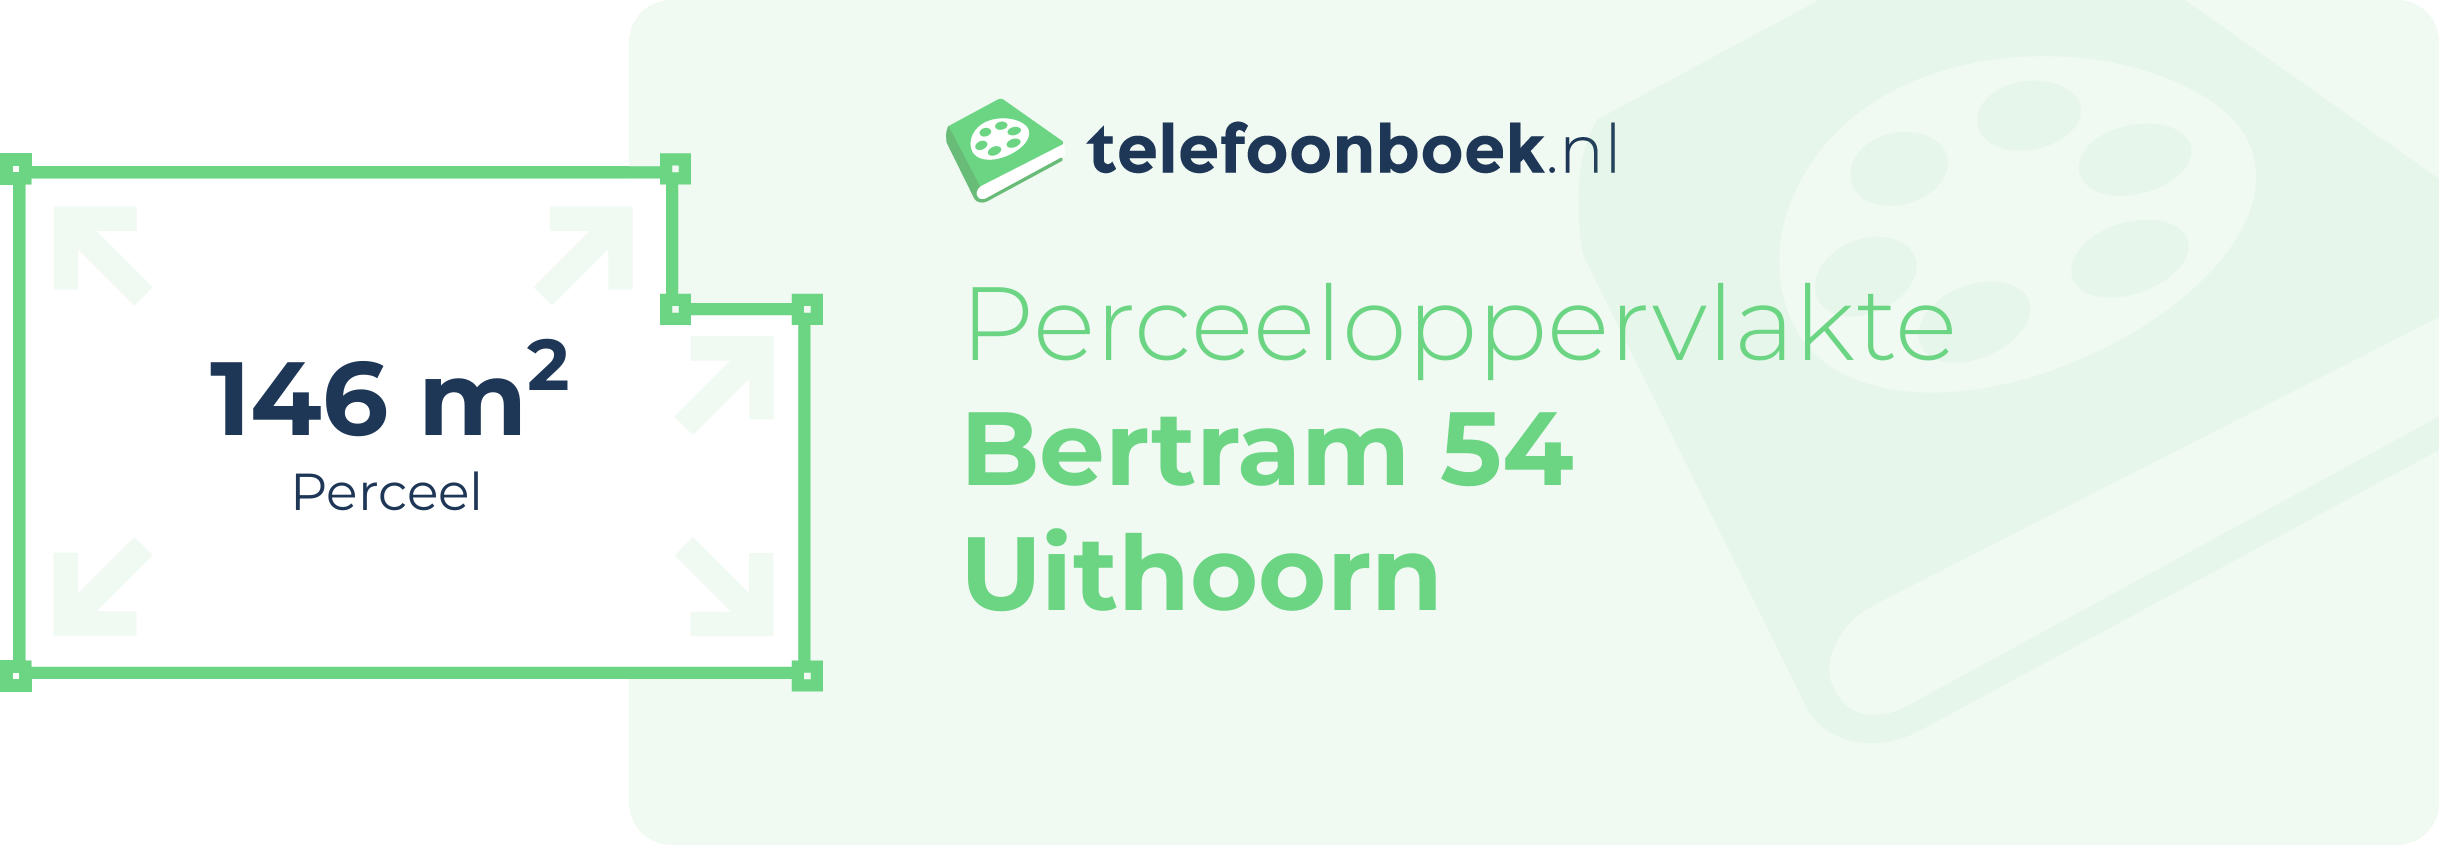 Perceeloppervlakte Bertram 54 Uithoorn